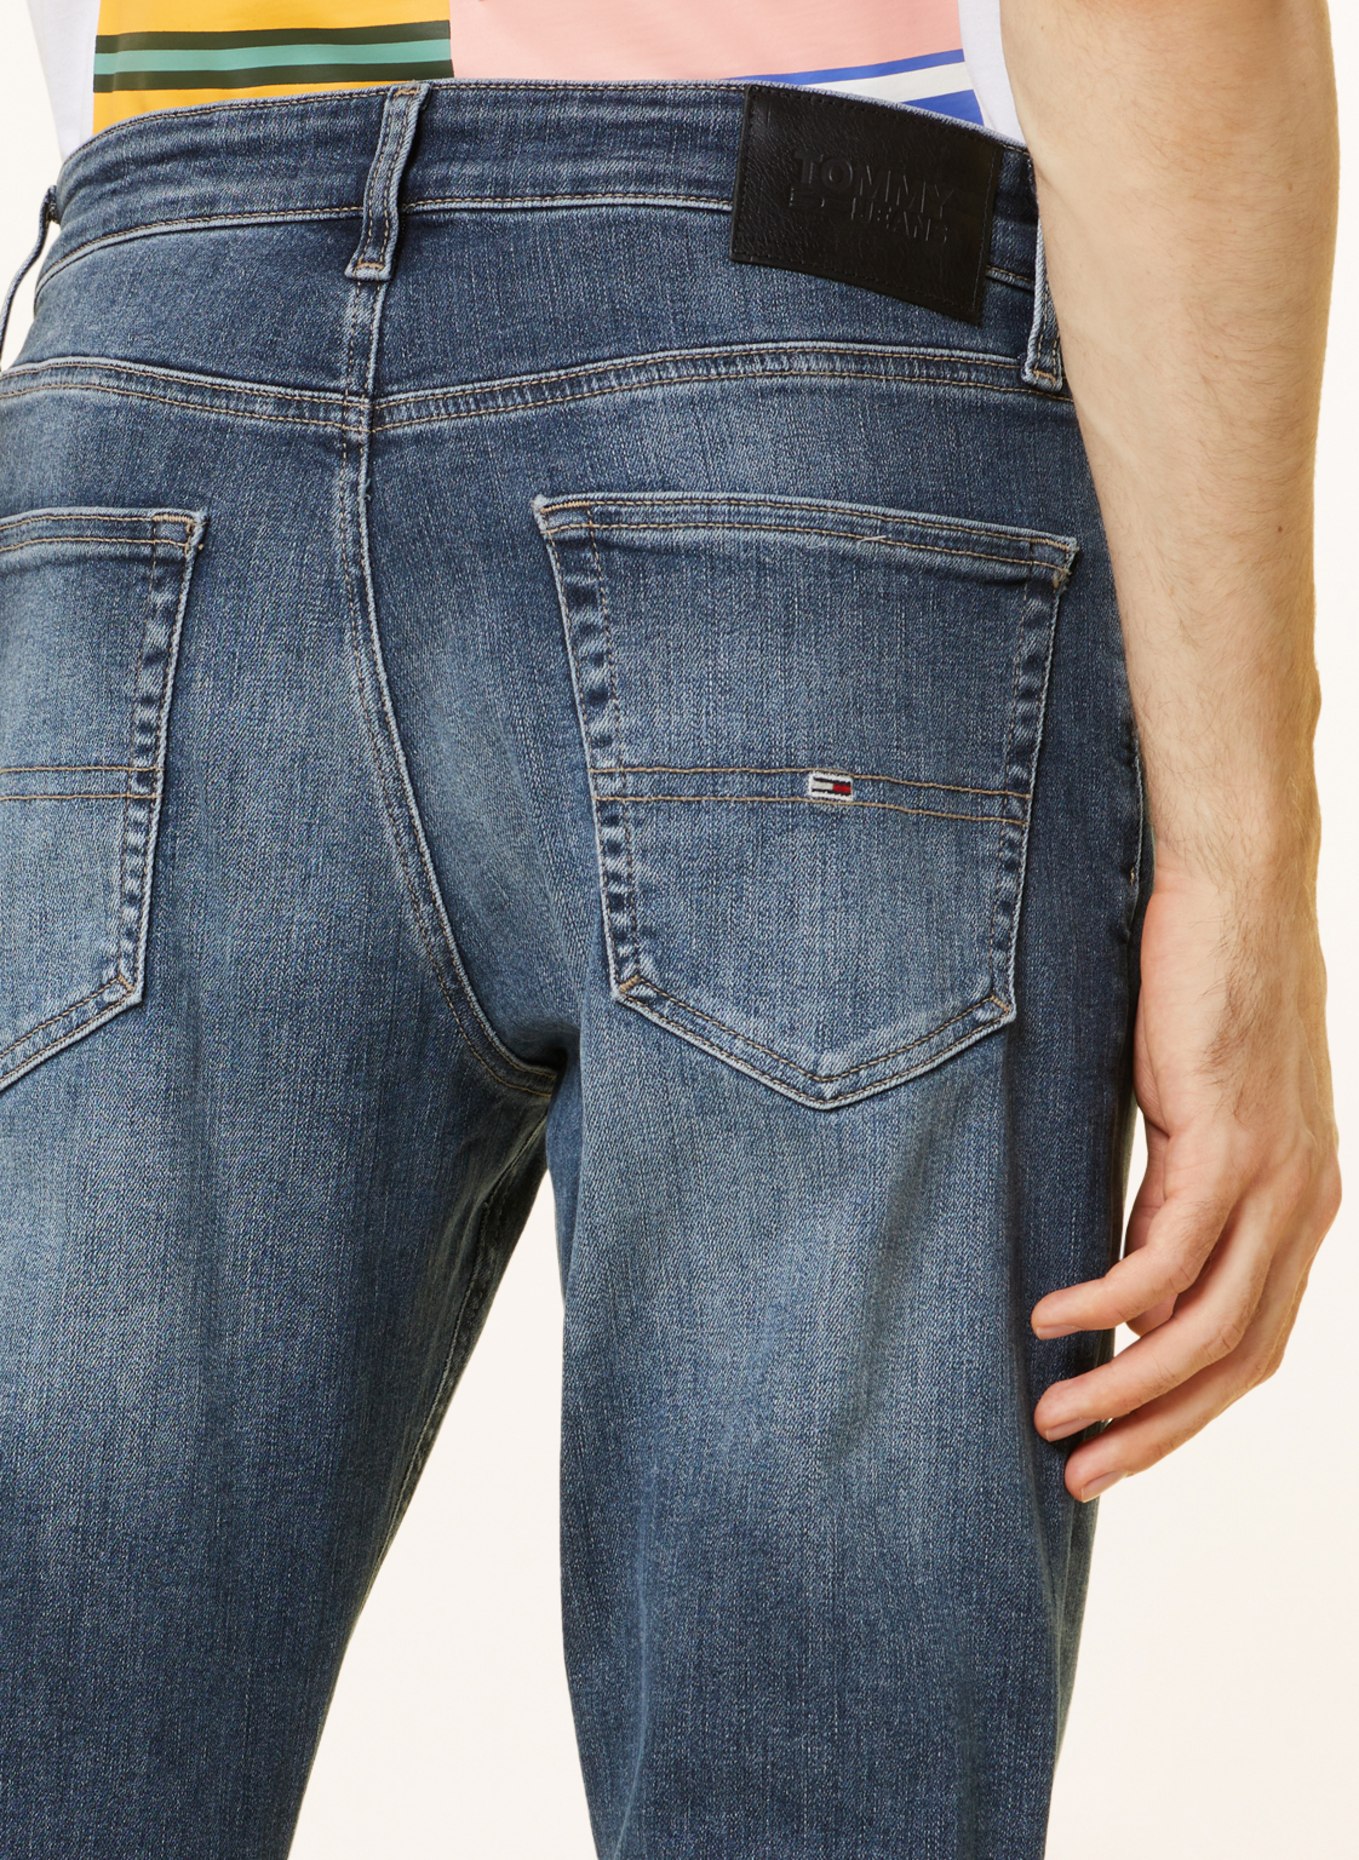 TOMMY JEANS Jeans AUSTIN tapered fit, Color: 1BK Denim Dark (Image 6)